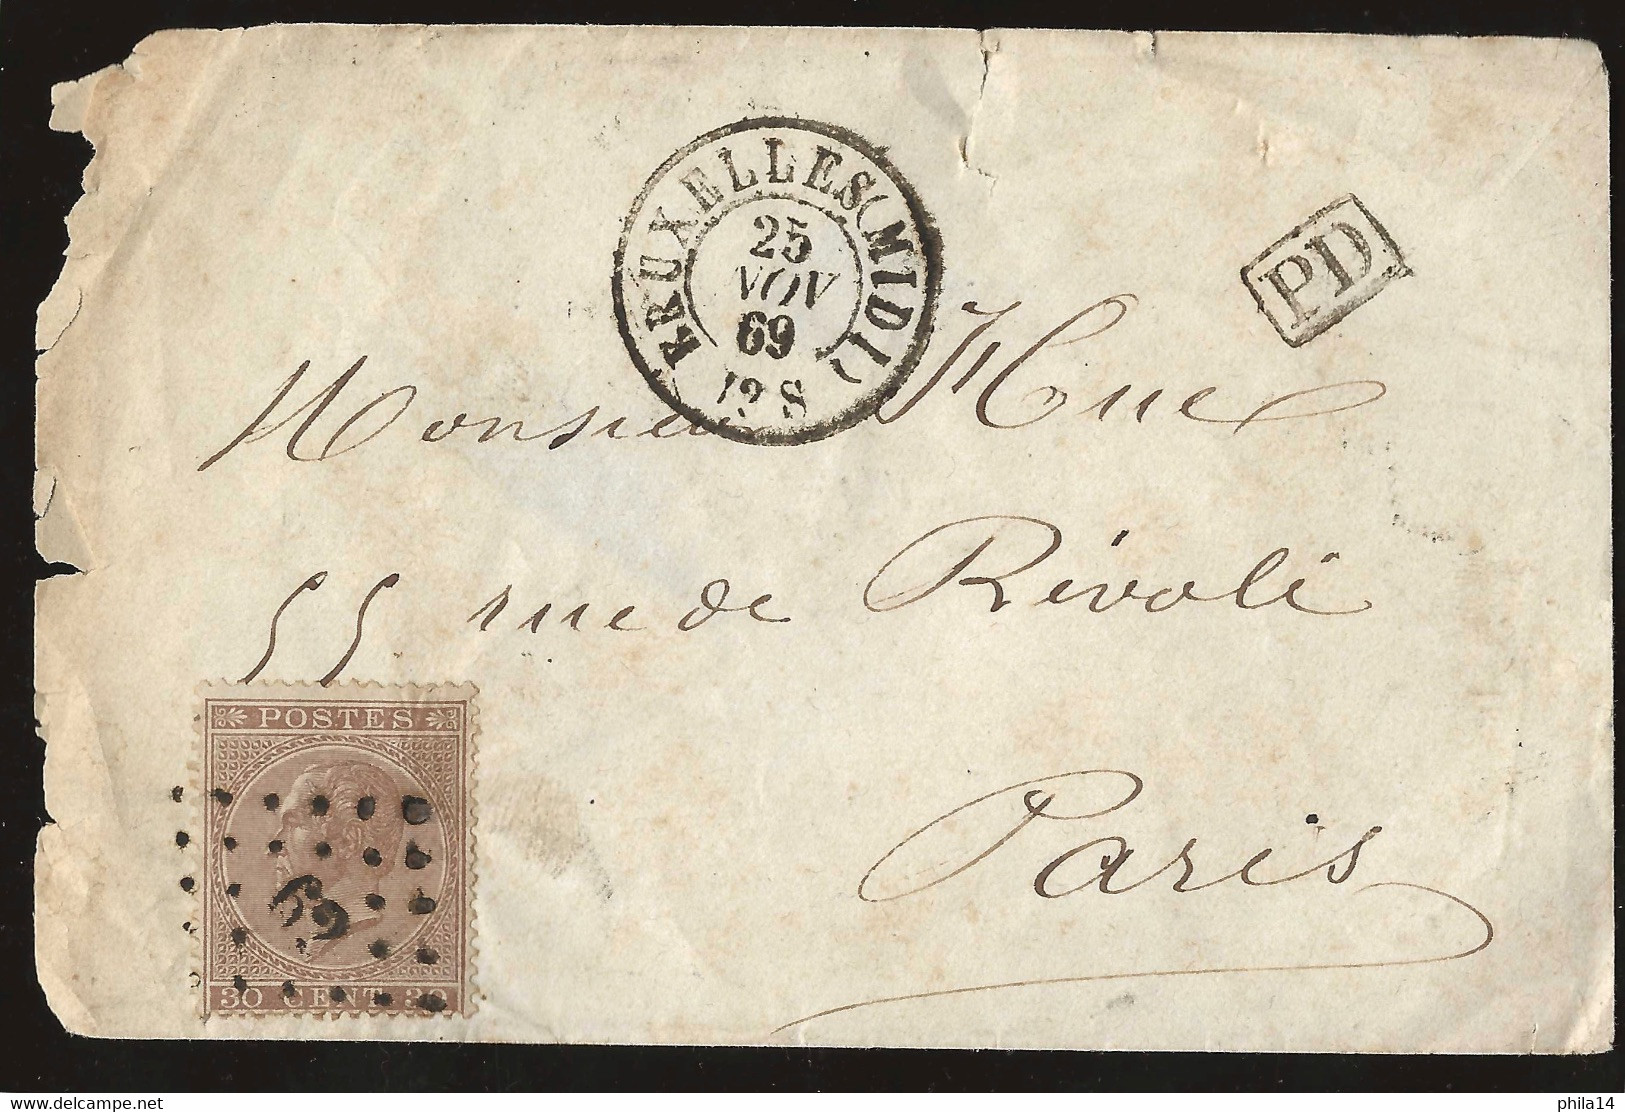 ENVELOPPE 30c LEOPOLD / BRUXELLES POUR PARIS / 25 NOV 1869 / LSC - 1869-1883 Léopold II